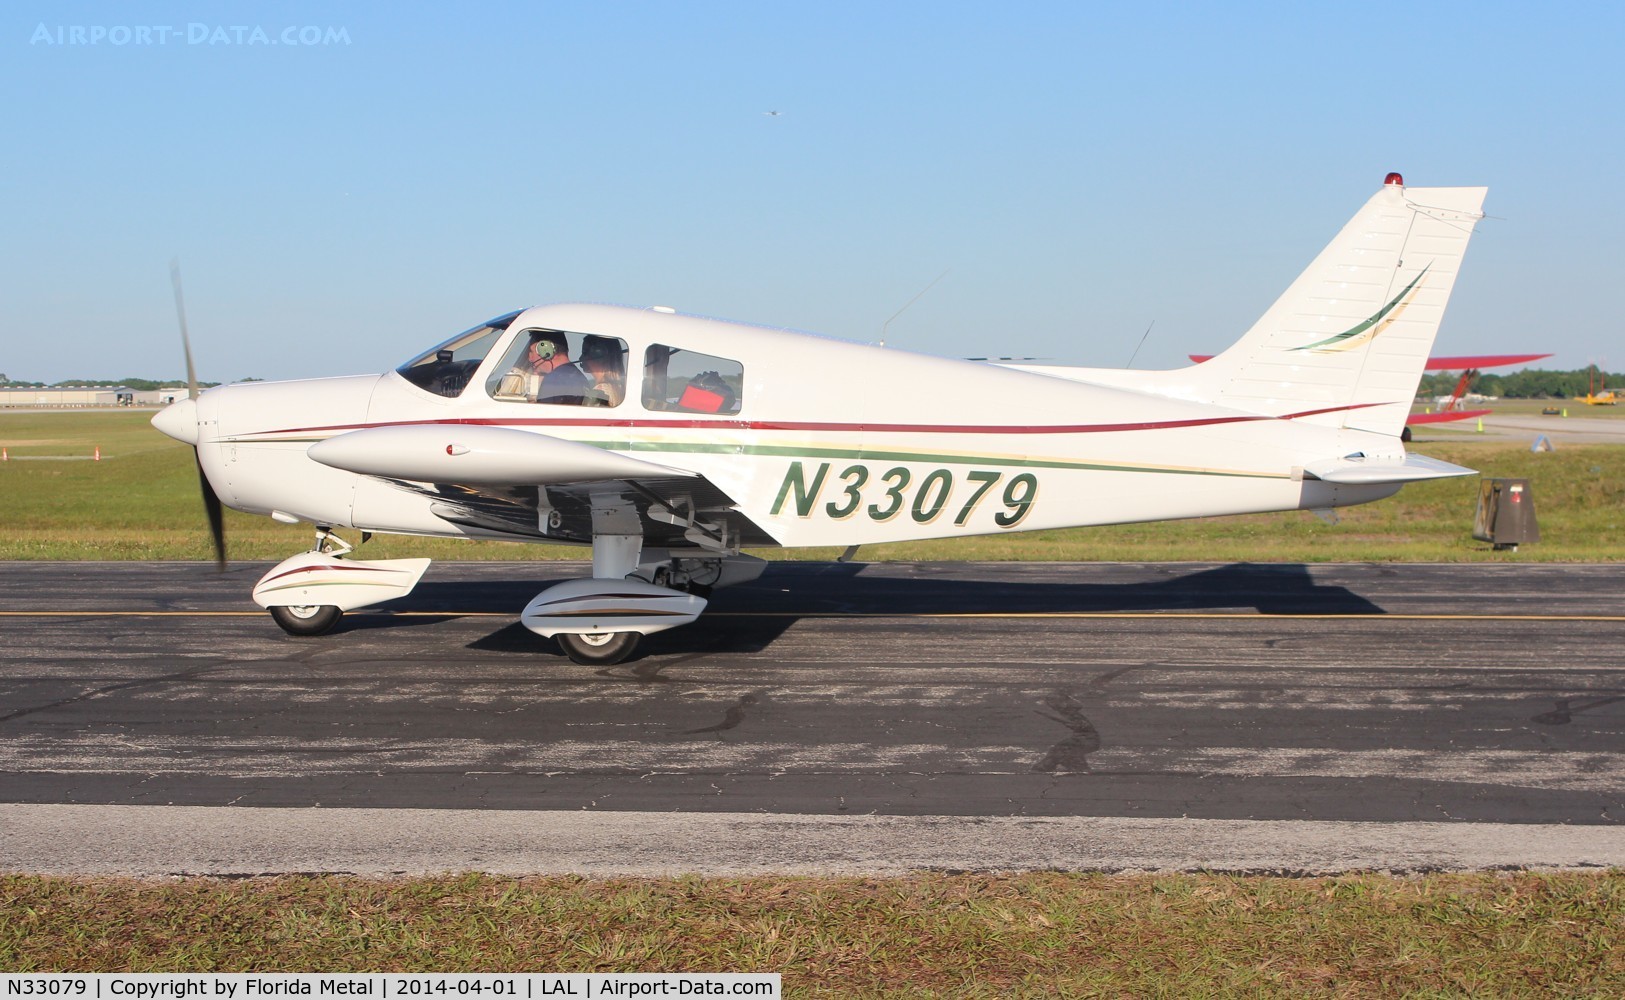 N33079, 1975 Piper PA-28-140 C/N 28-7525150, PA-28-140